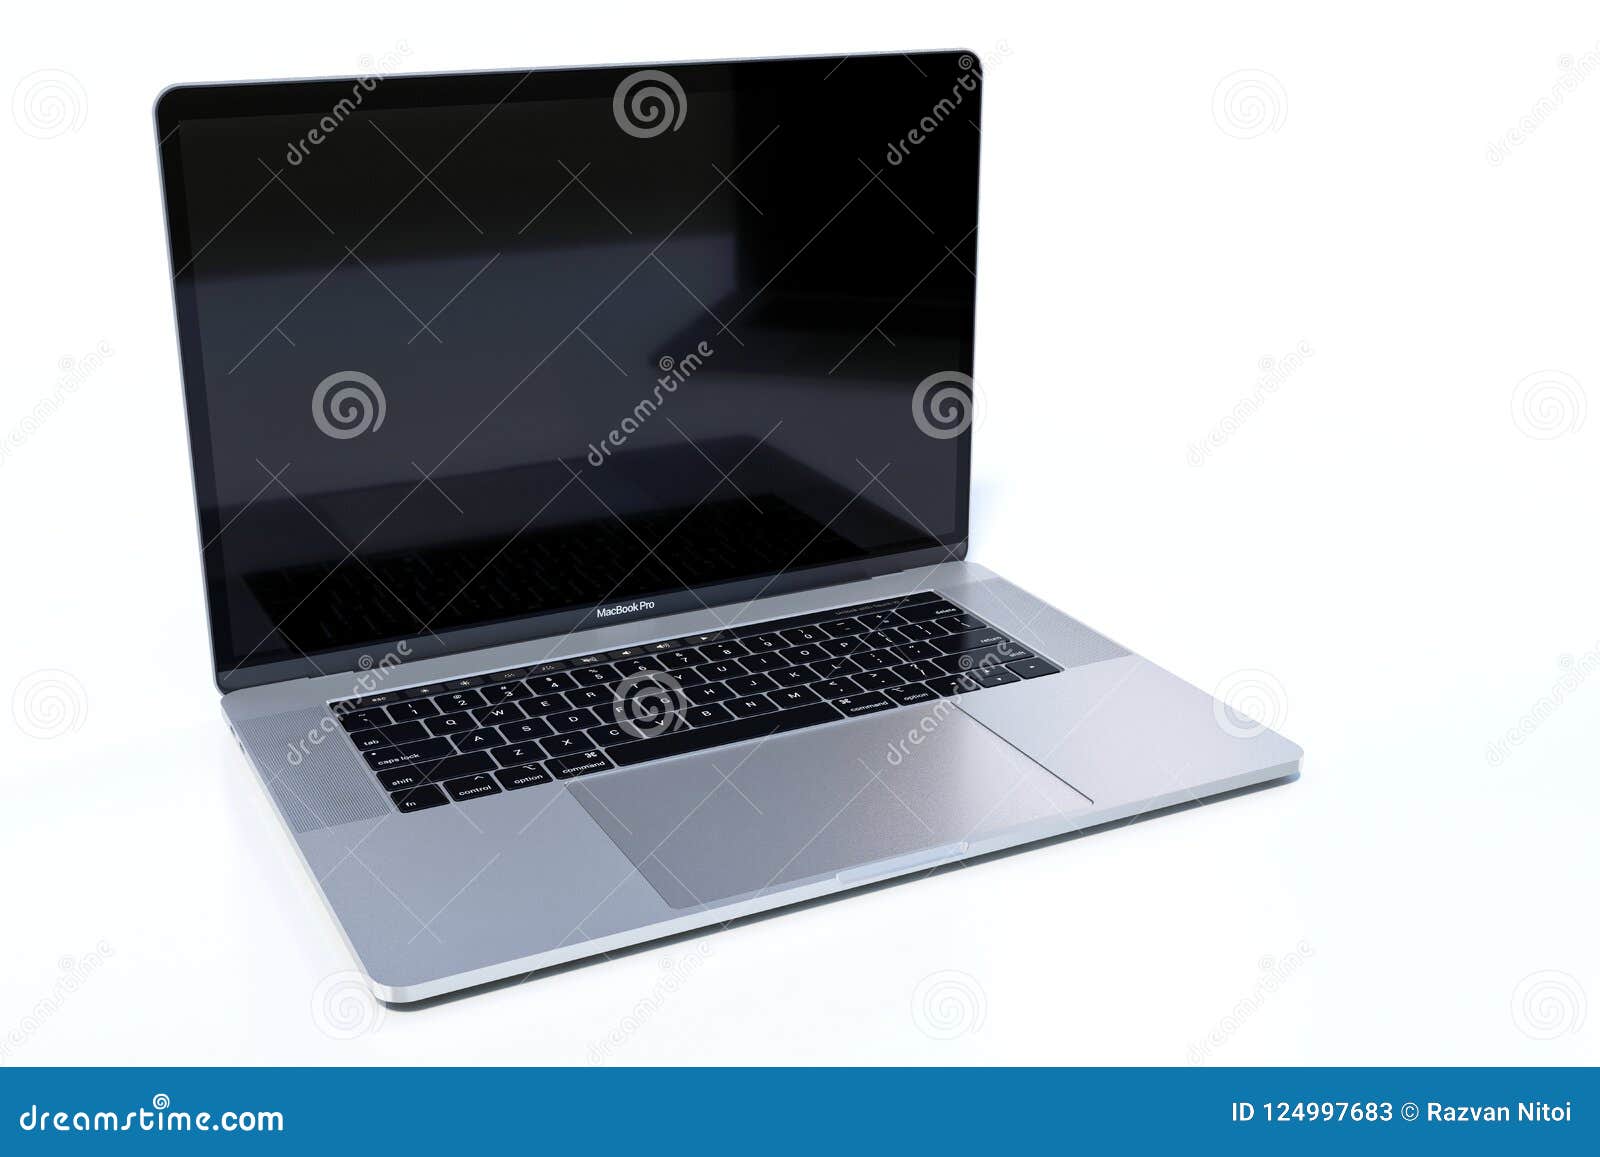 Laptop MacBook Pro 15 inch: Thỏa mãn đam mê sáng tạo với chiếc Laptop MacBook Pro 15 inch! Làm việc, giải trí hay chỉ đơn giản là lướt web, chiếc laptop mới của bạn sẽ làm tất cả những điều đó trở nên tuyệt vời hơn bao giờ hết.